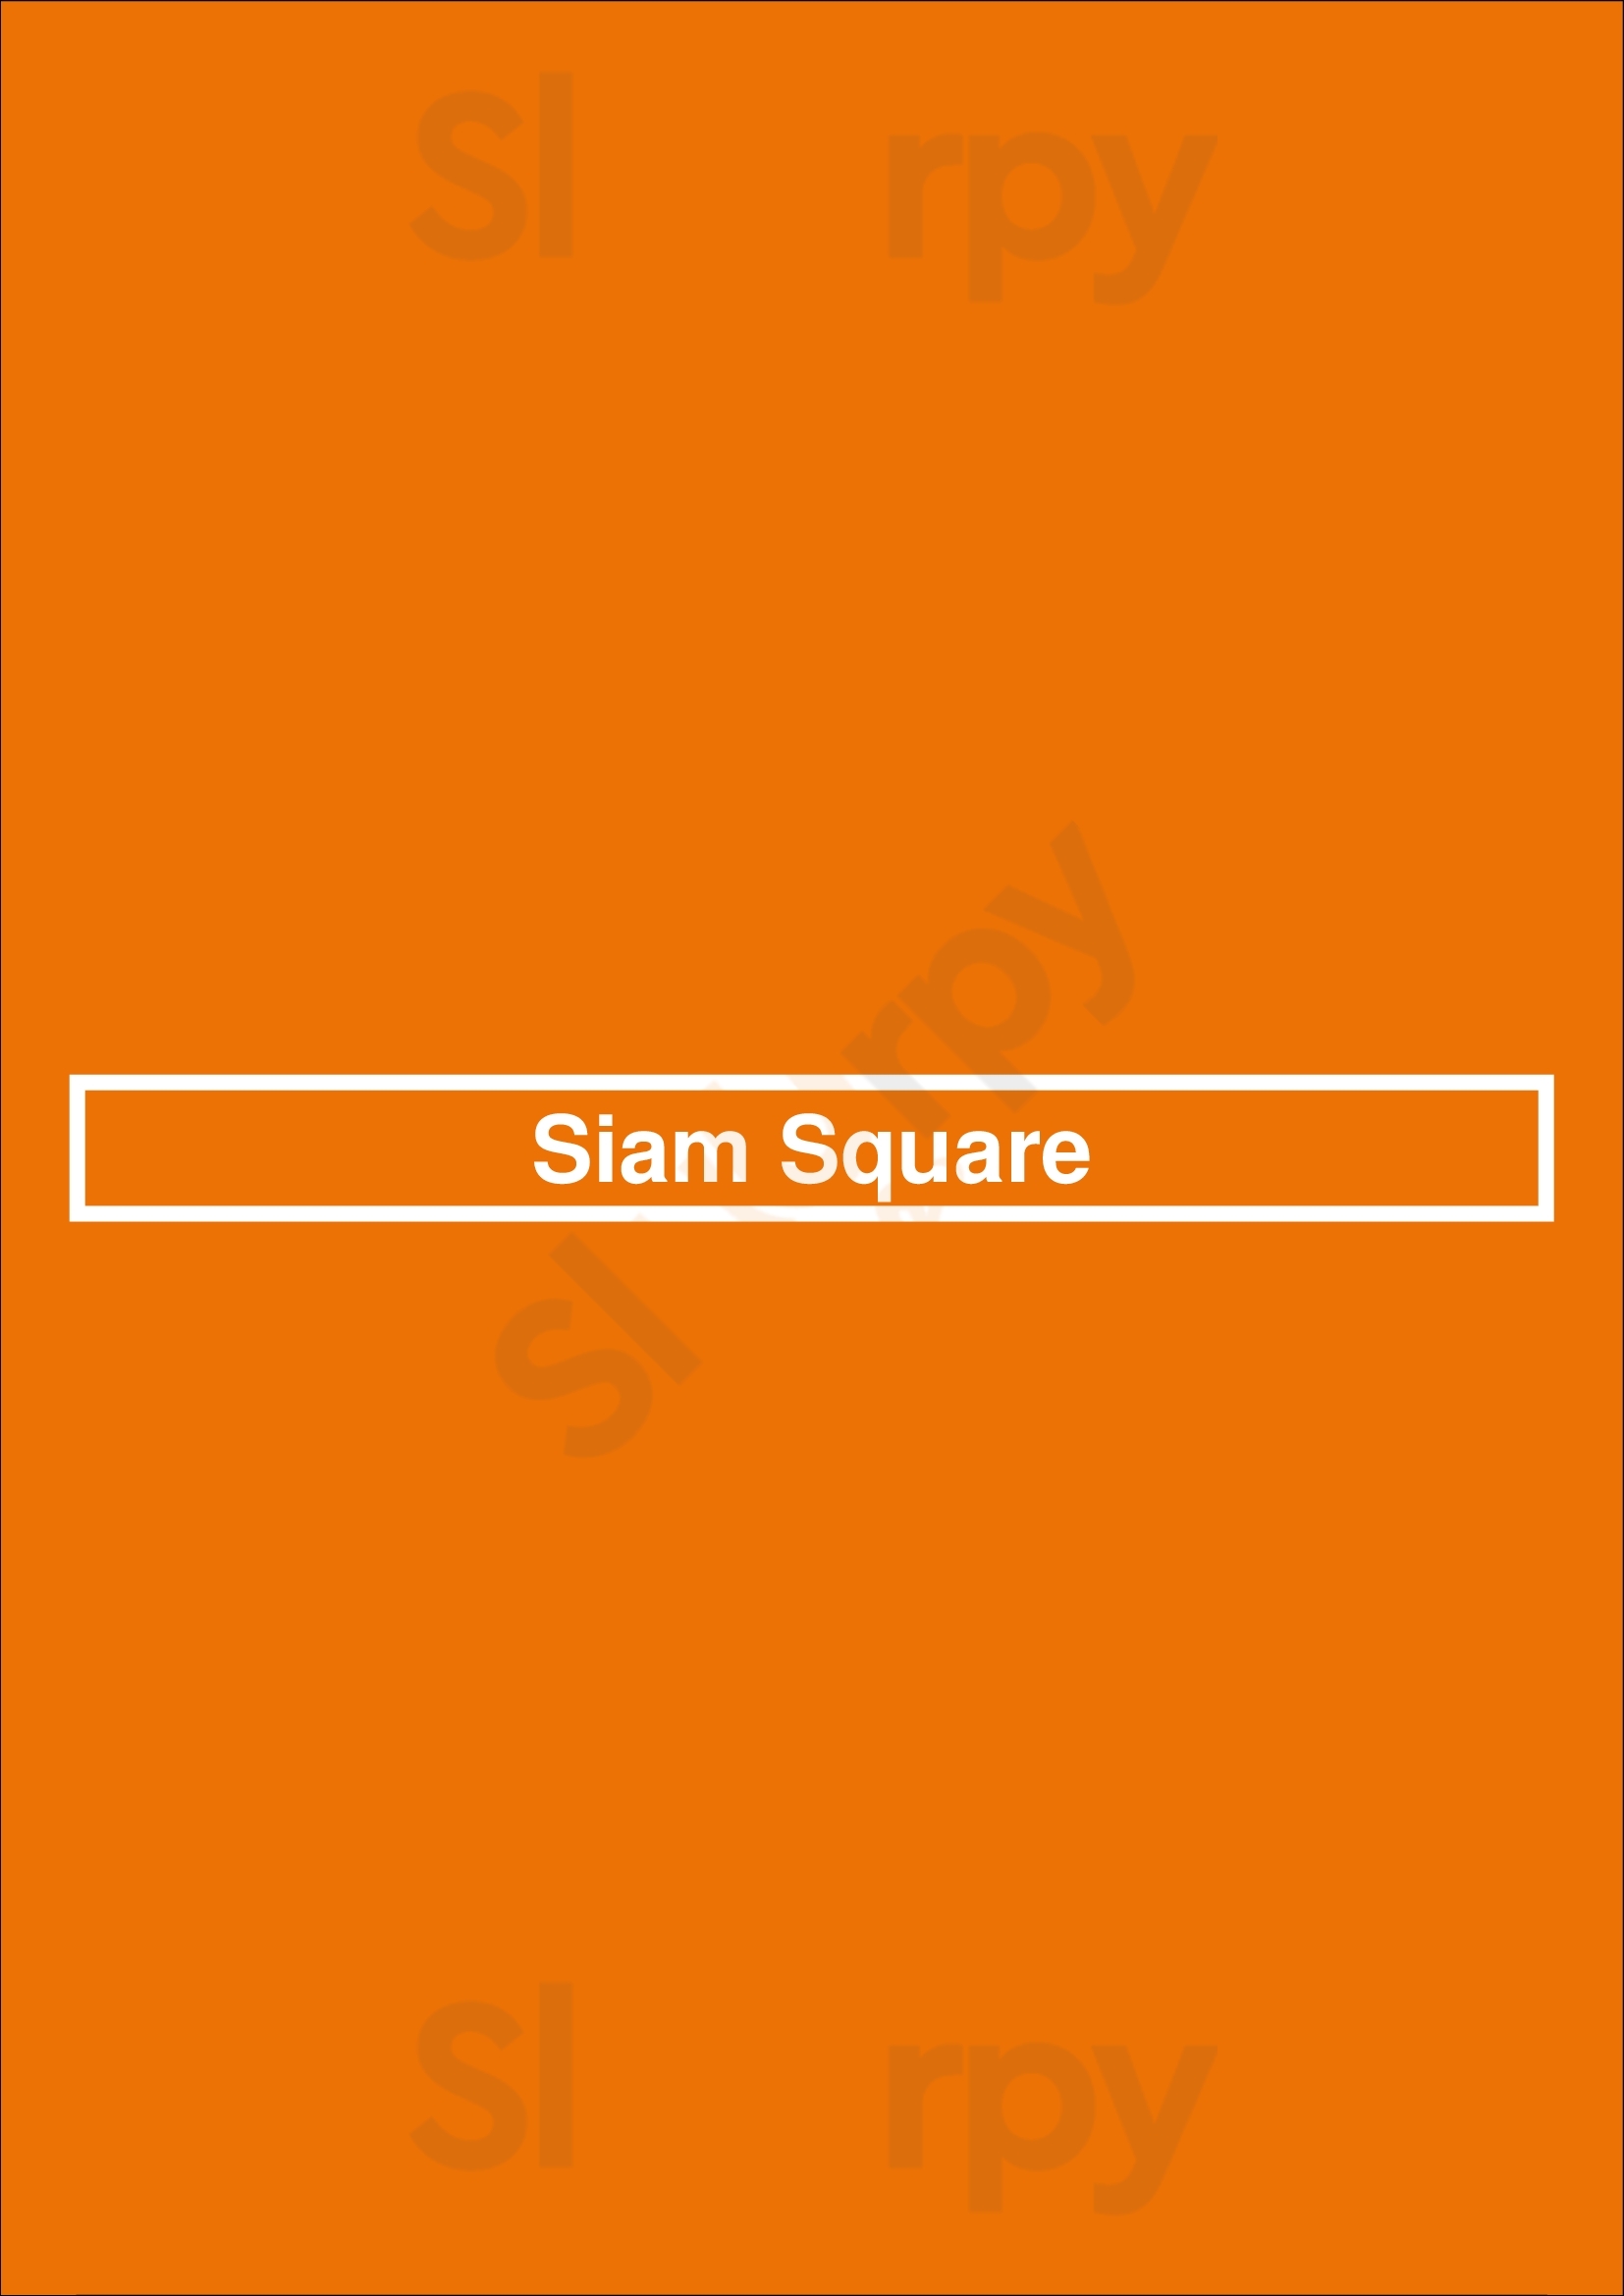 Siam Square Indianapolis Menu - 1